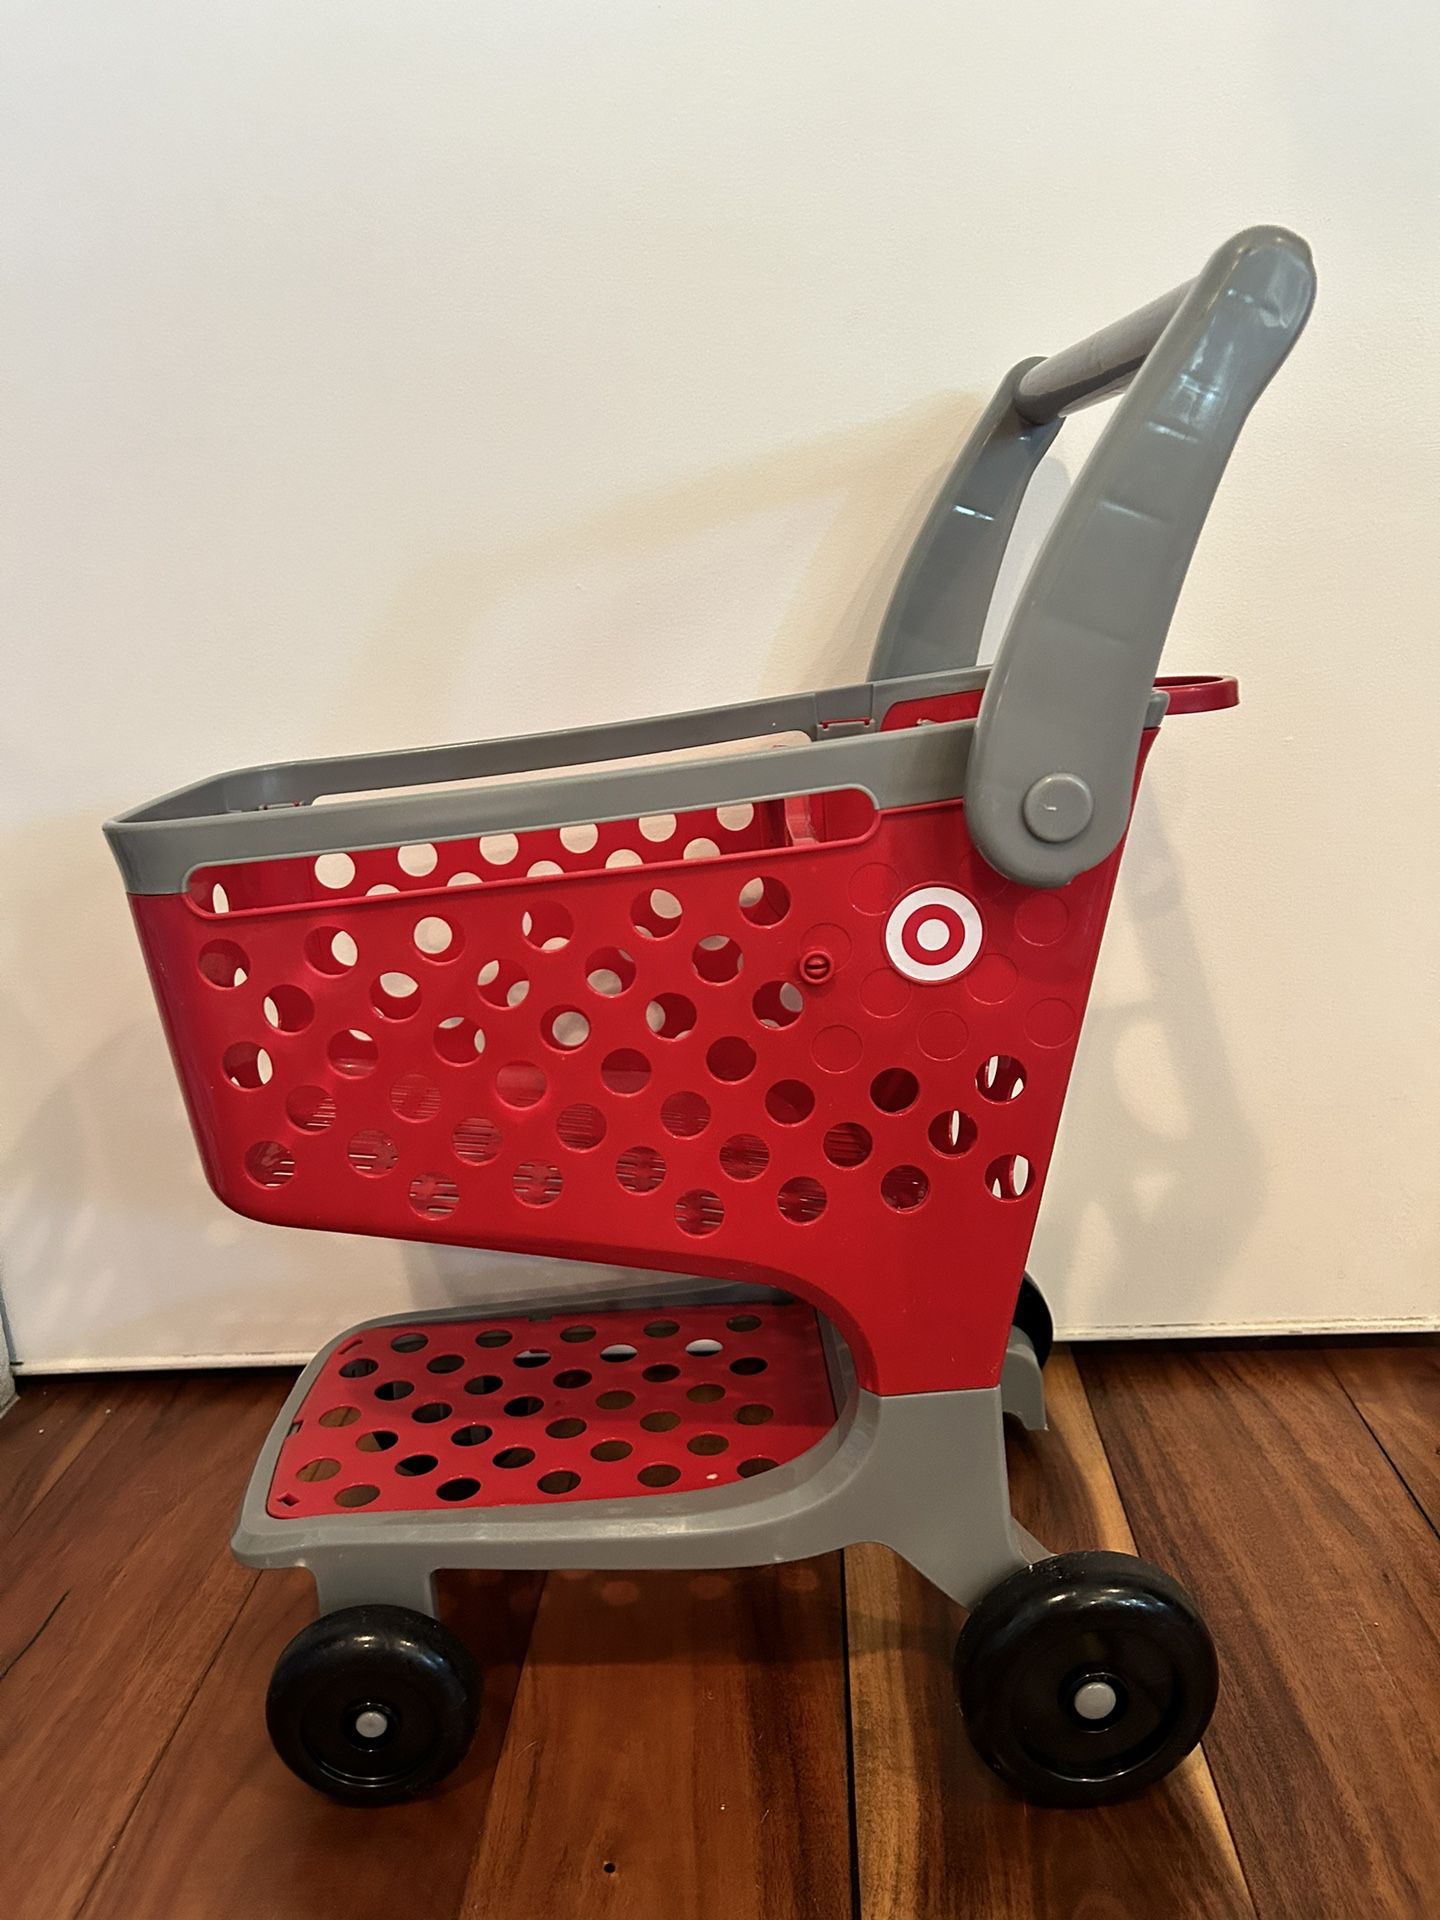 Target Shopping cart Toy 